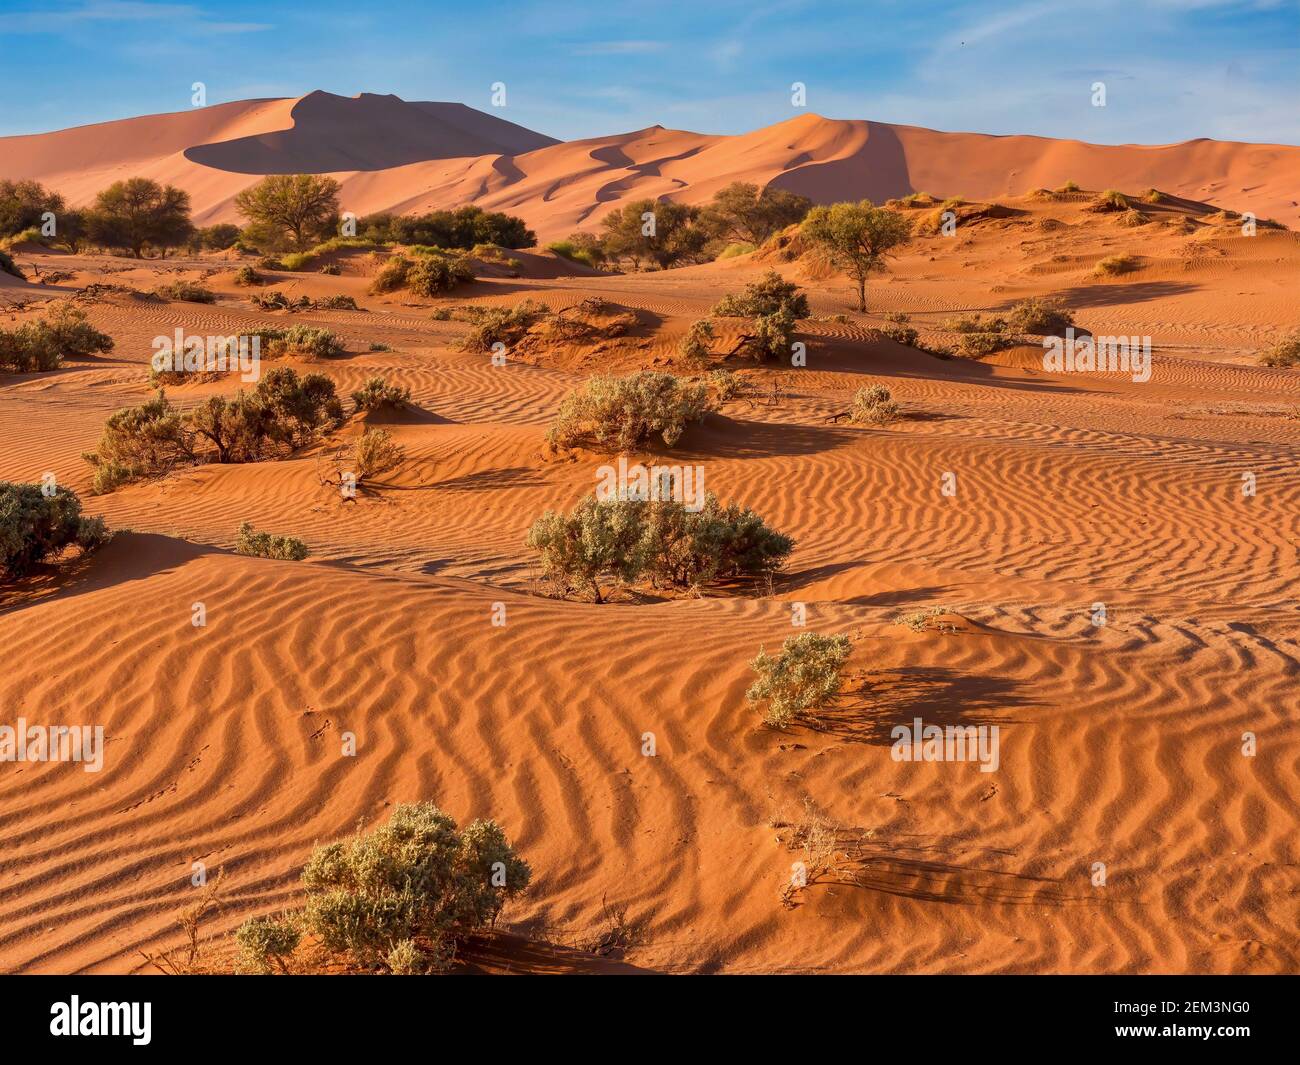 Le sable rouge, balayé par le vent, de Sossusvlei, dans le désert du Namib, en Namibie, où la végétation profonde s'est adaptée pour survivre aux conditions difficiles. Banque D'Images